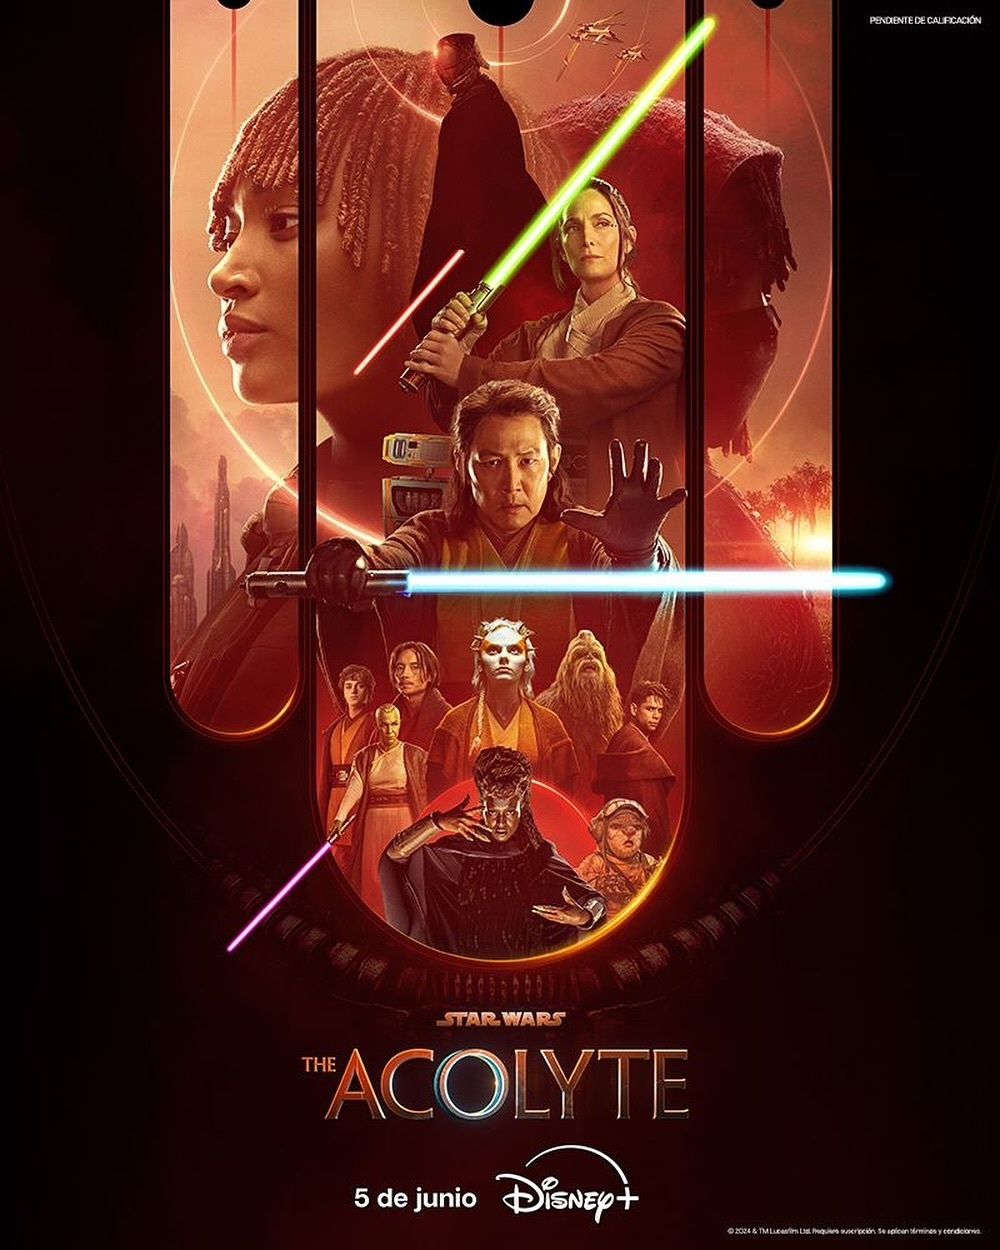 “Star Wars: The Acolyte”, estreno el 5 de junio